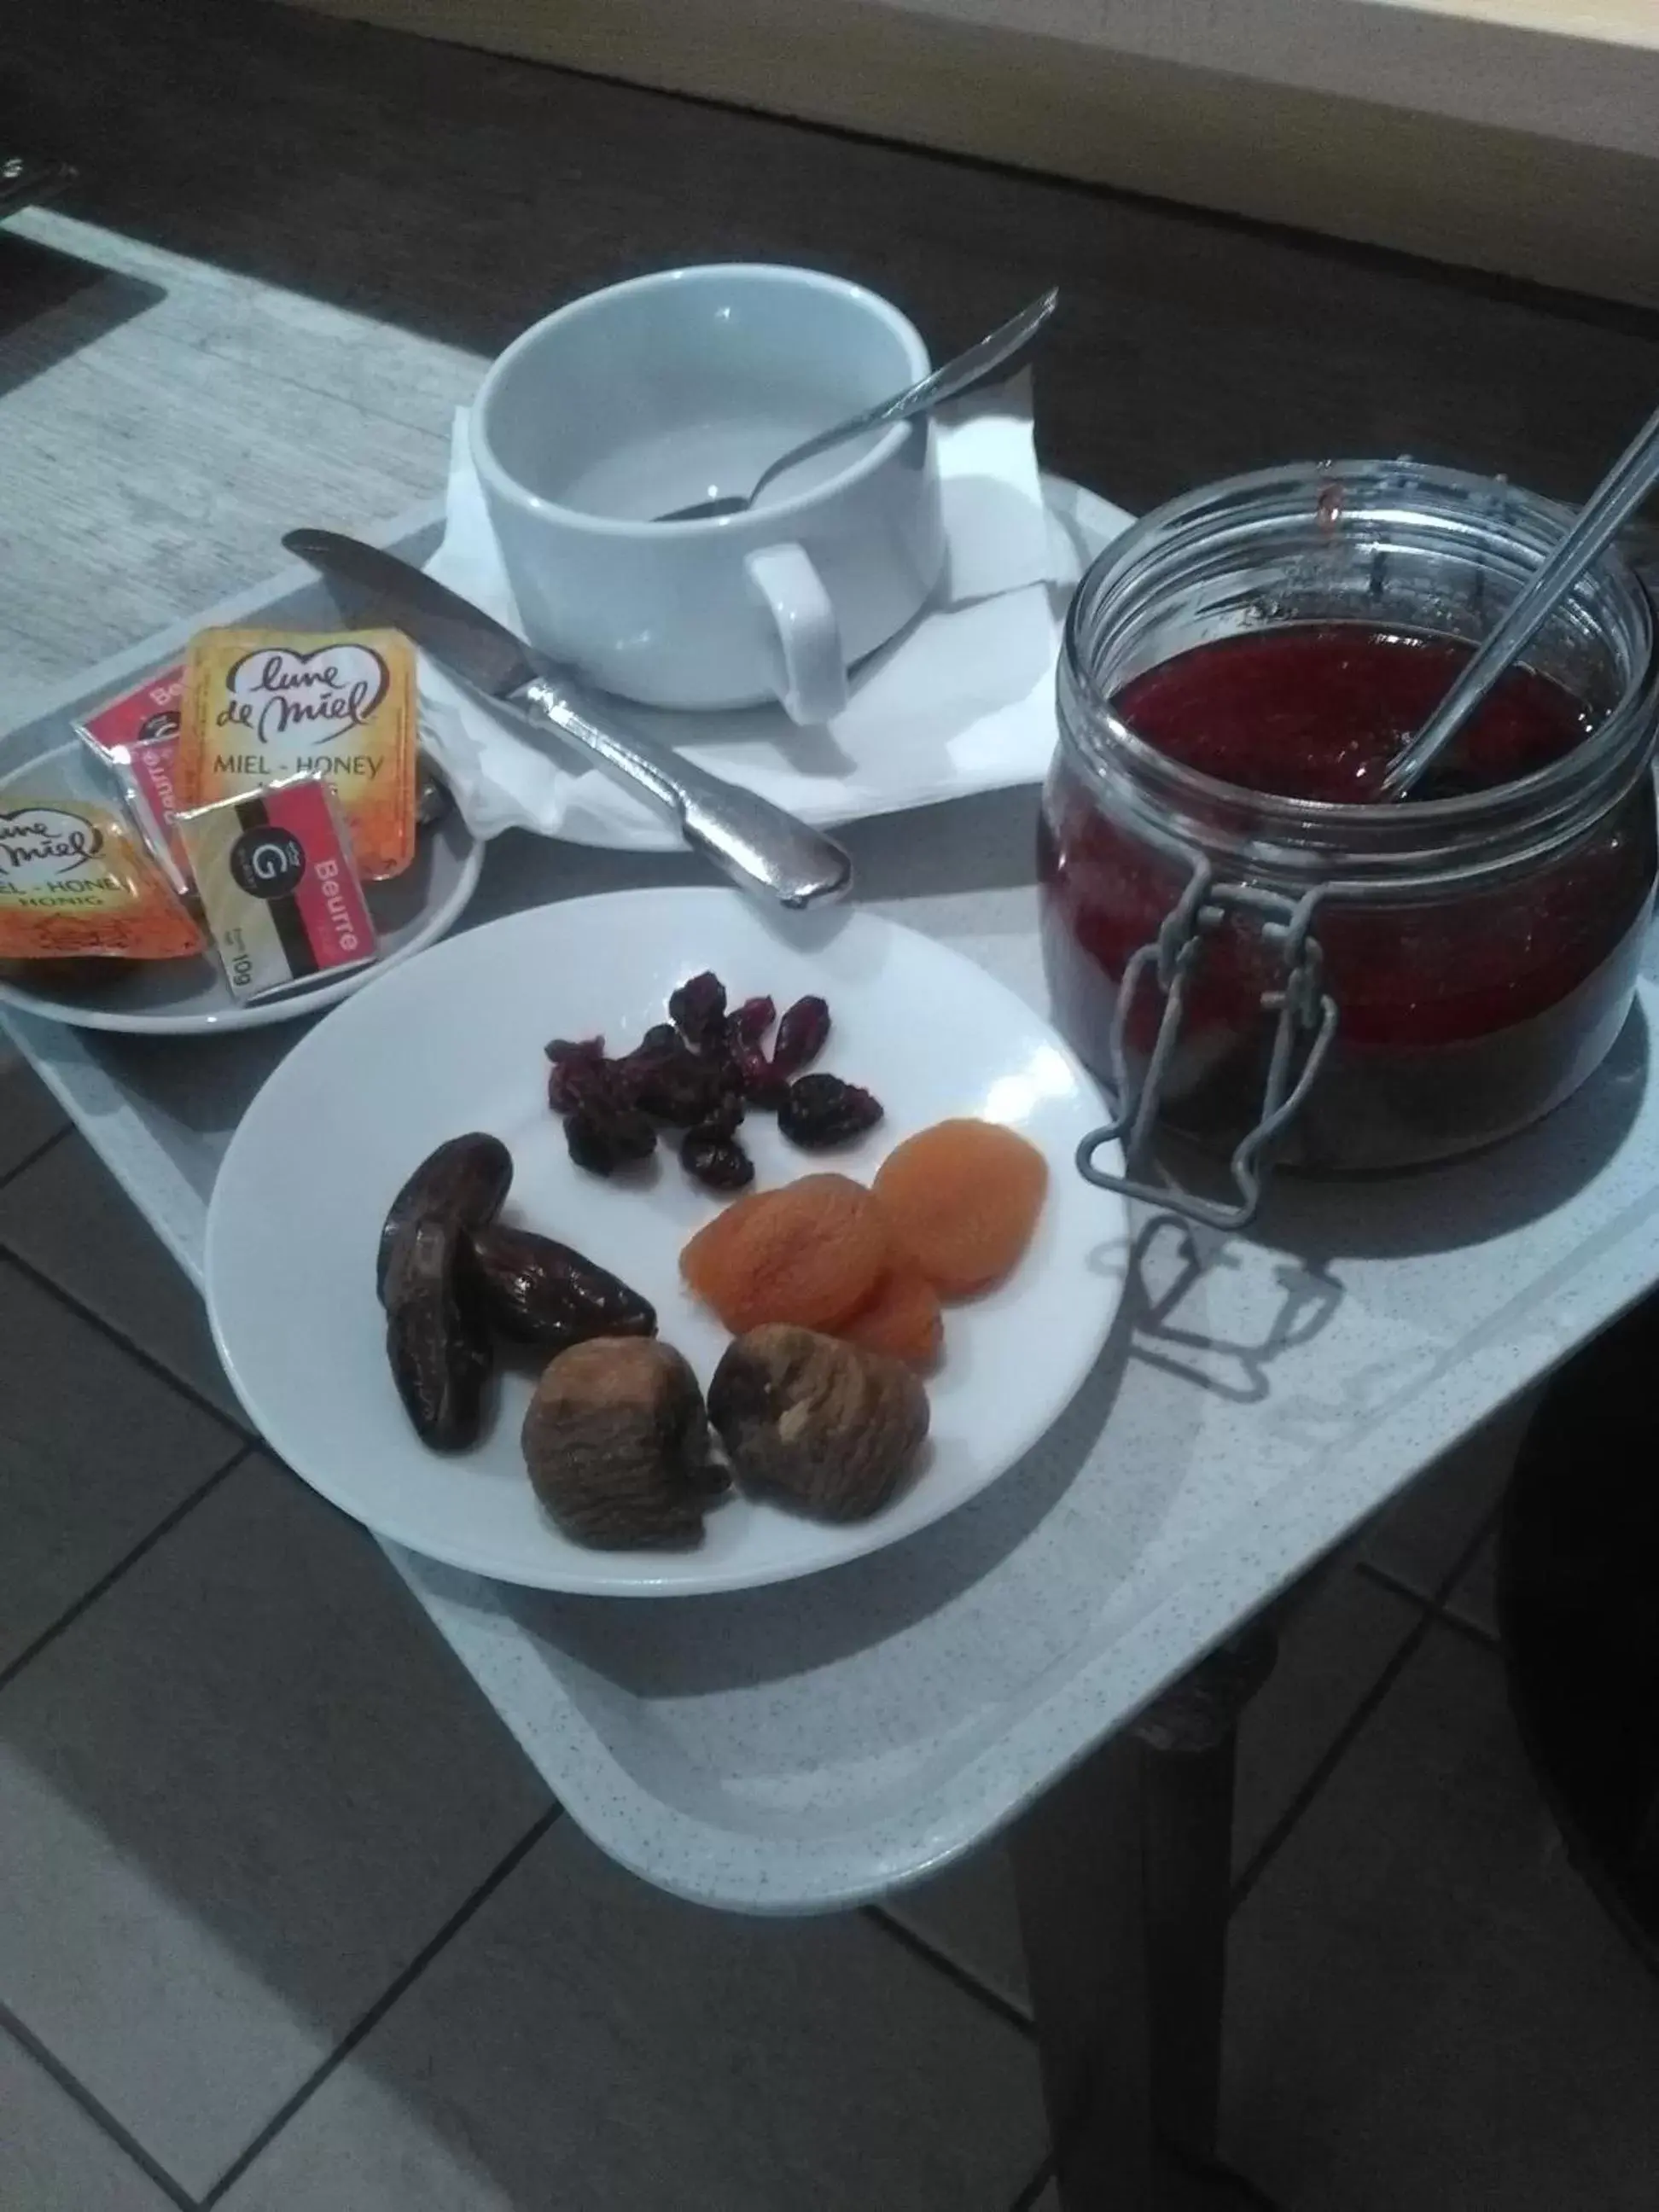 Buffet breakfast in Logis Hotel L'ange Couronne